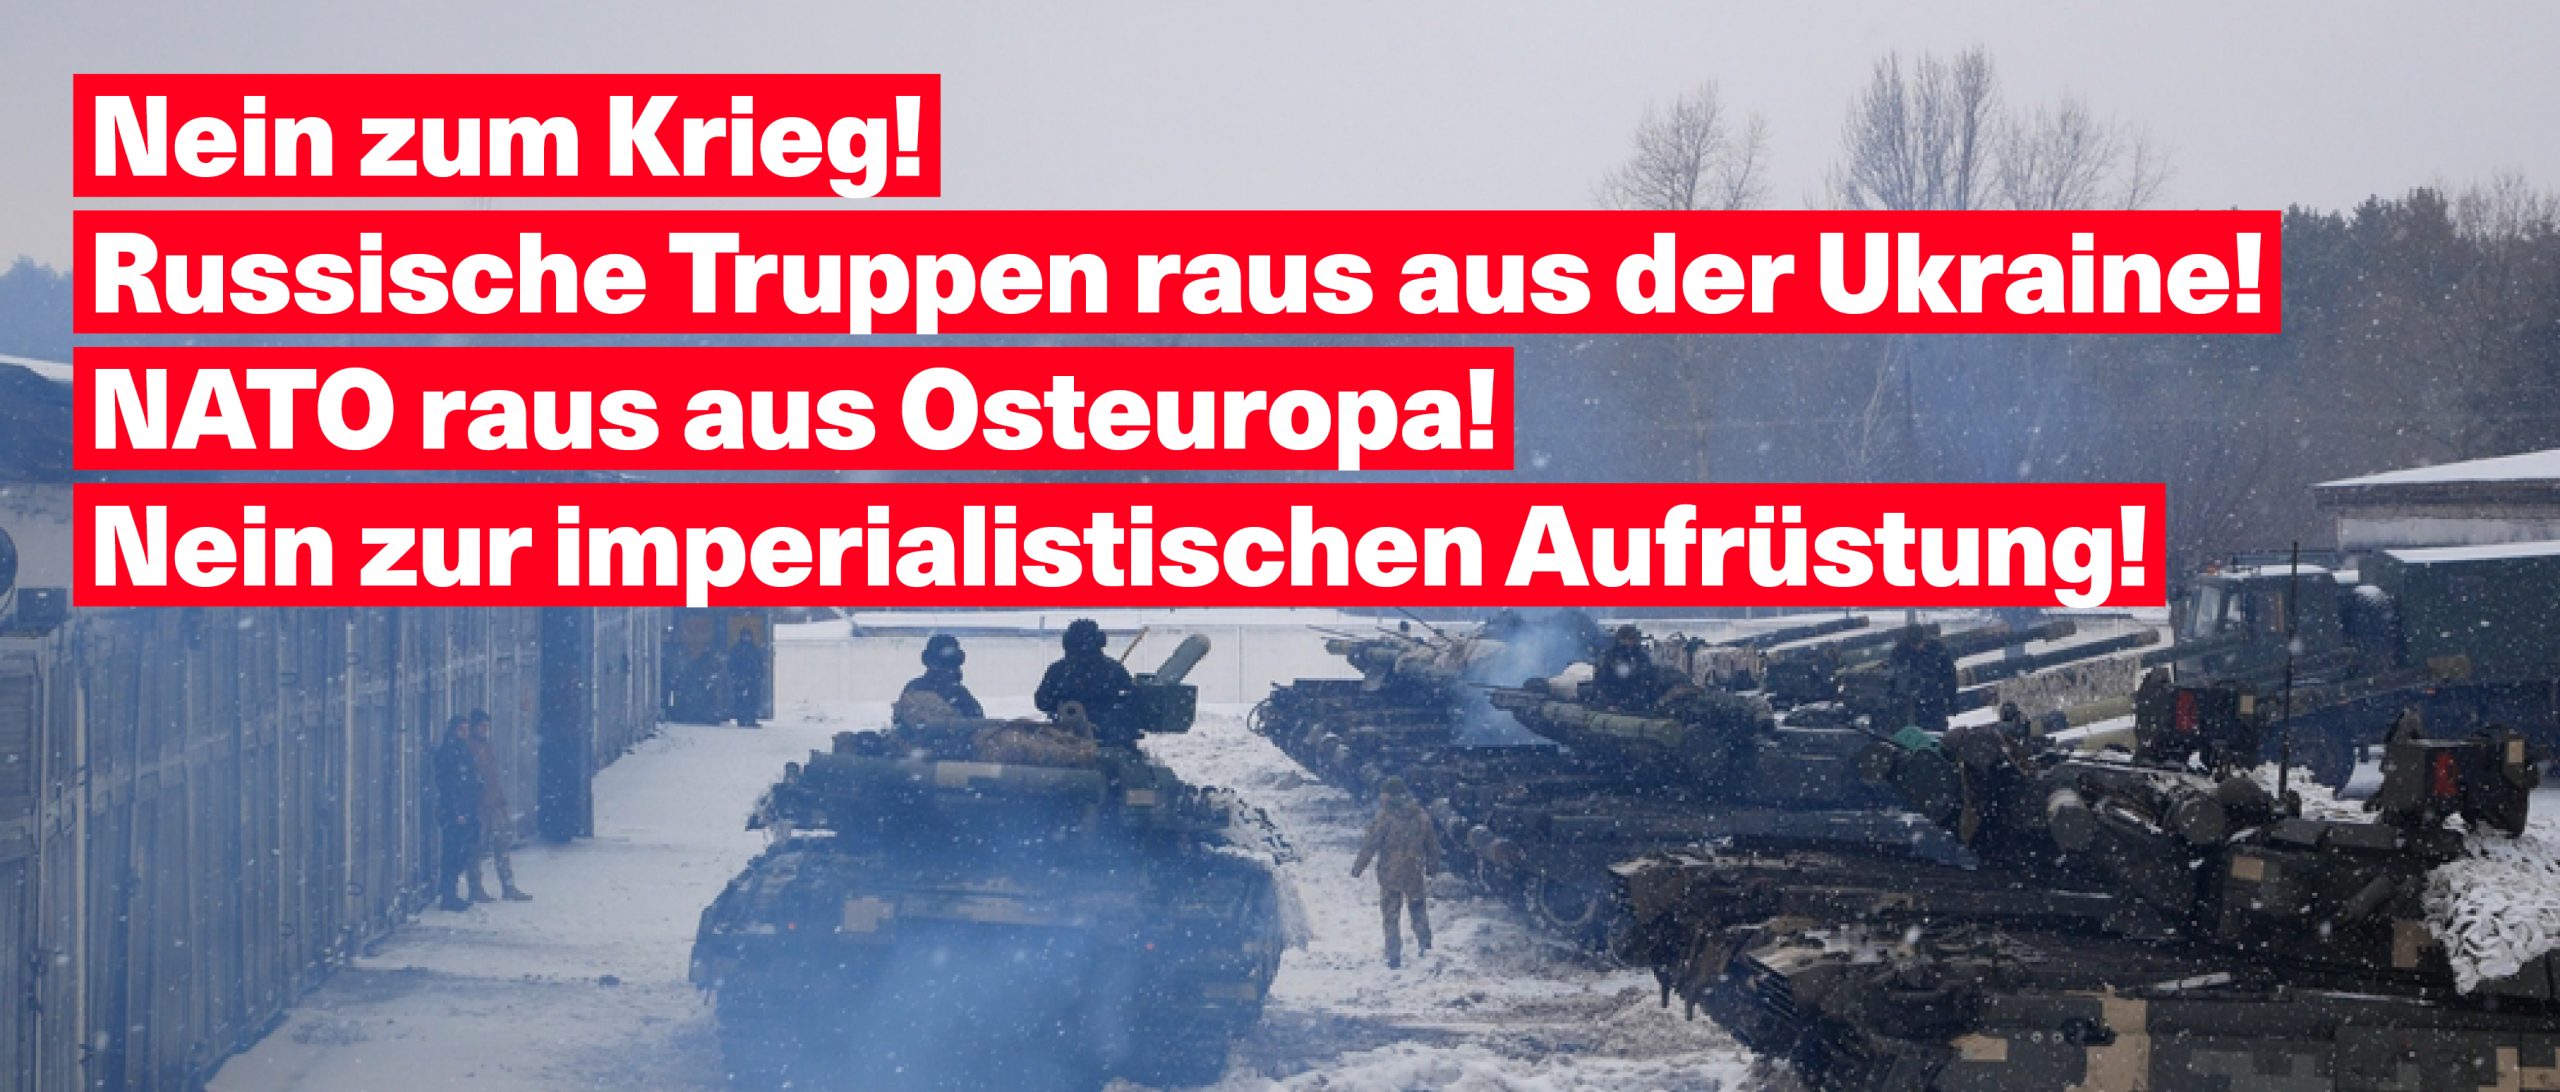 Nein zum Krieg! Russische Truppen raus aus der Ukraine! NATO raus aus Osteuropa! Nein zur imperialistischen Aufrüstung!